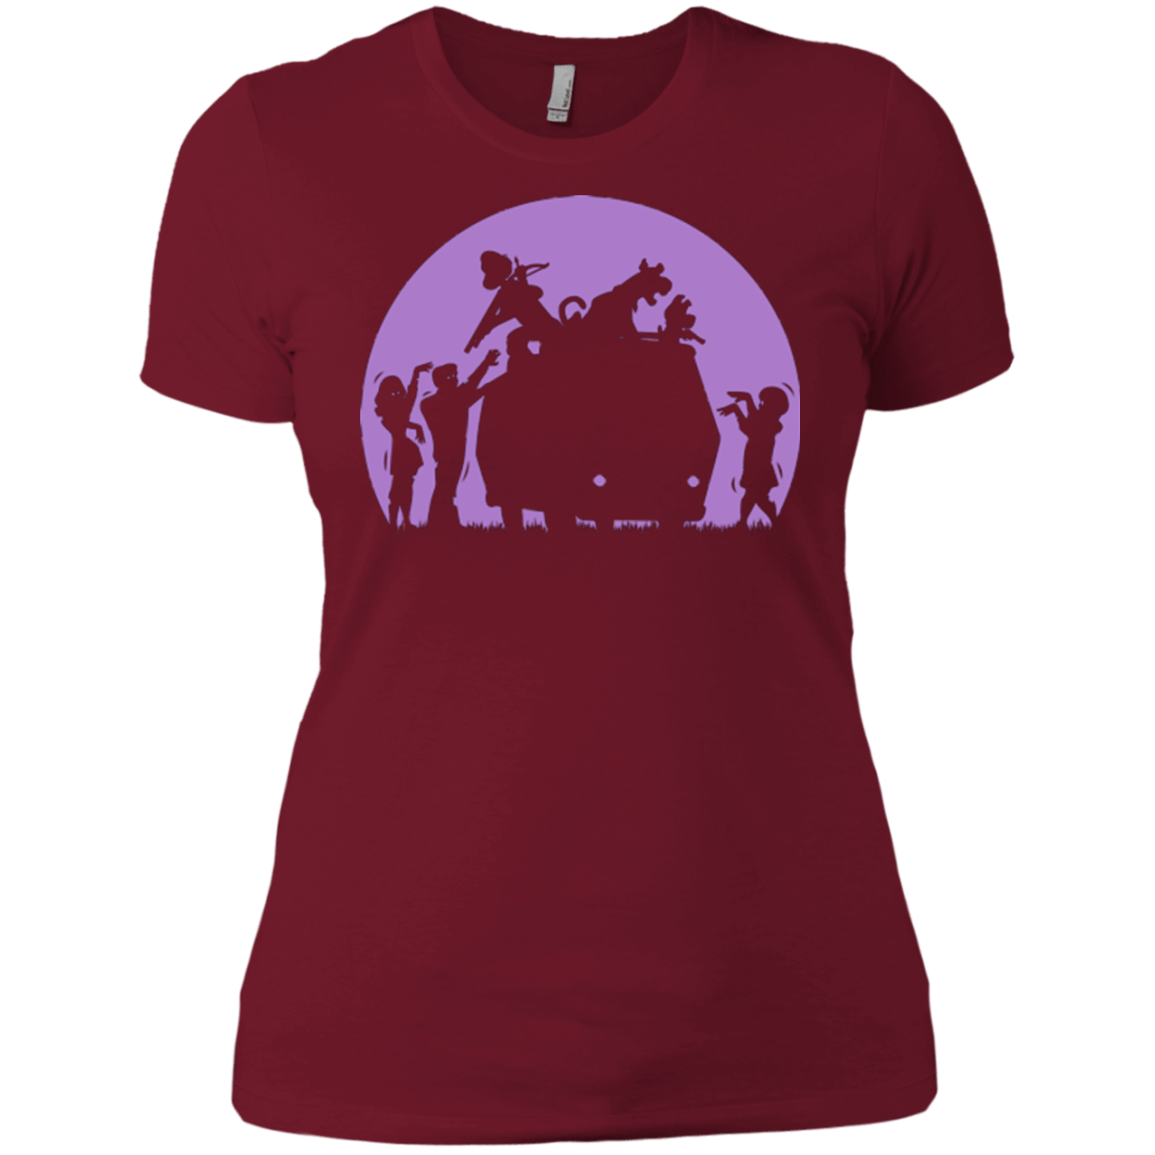 Zoinks They're Zombies Women's Premium T-Shirt